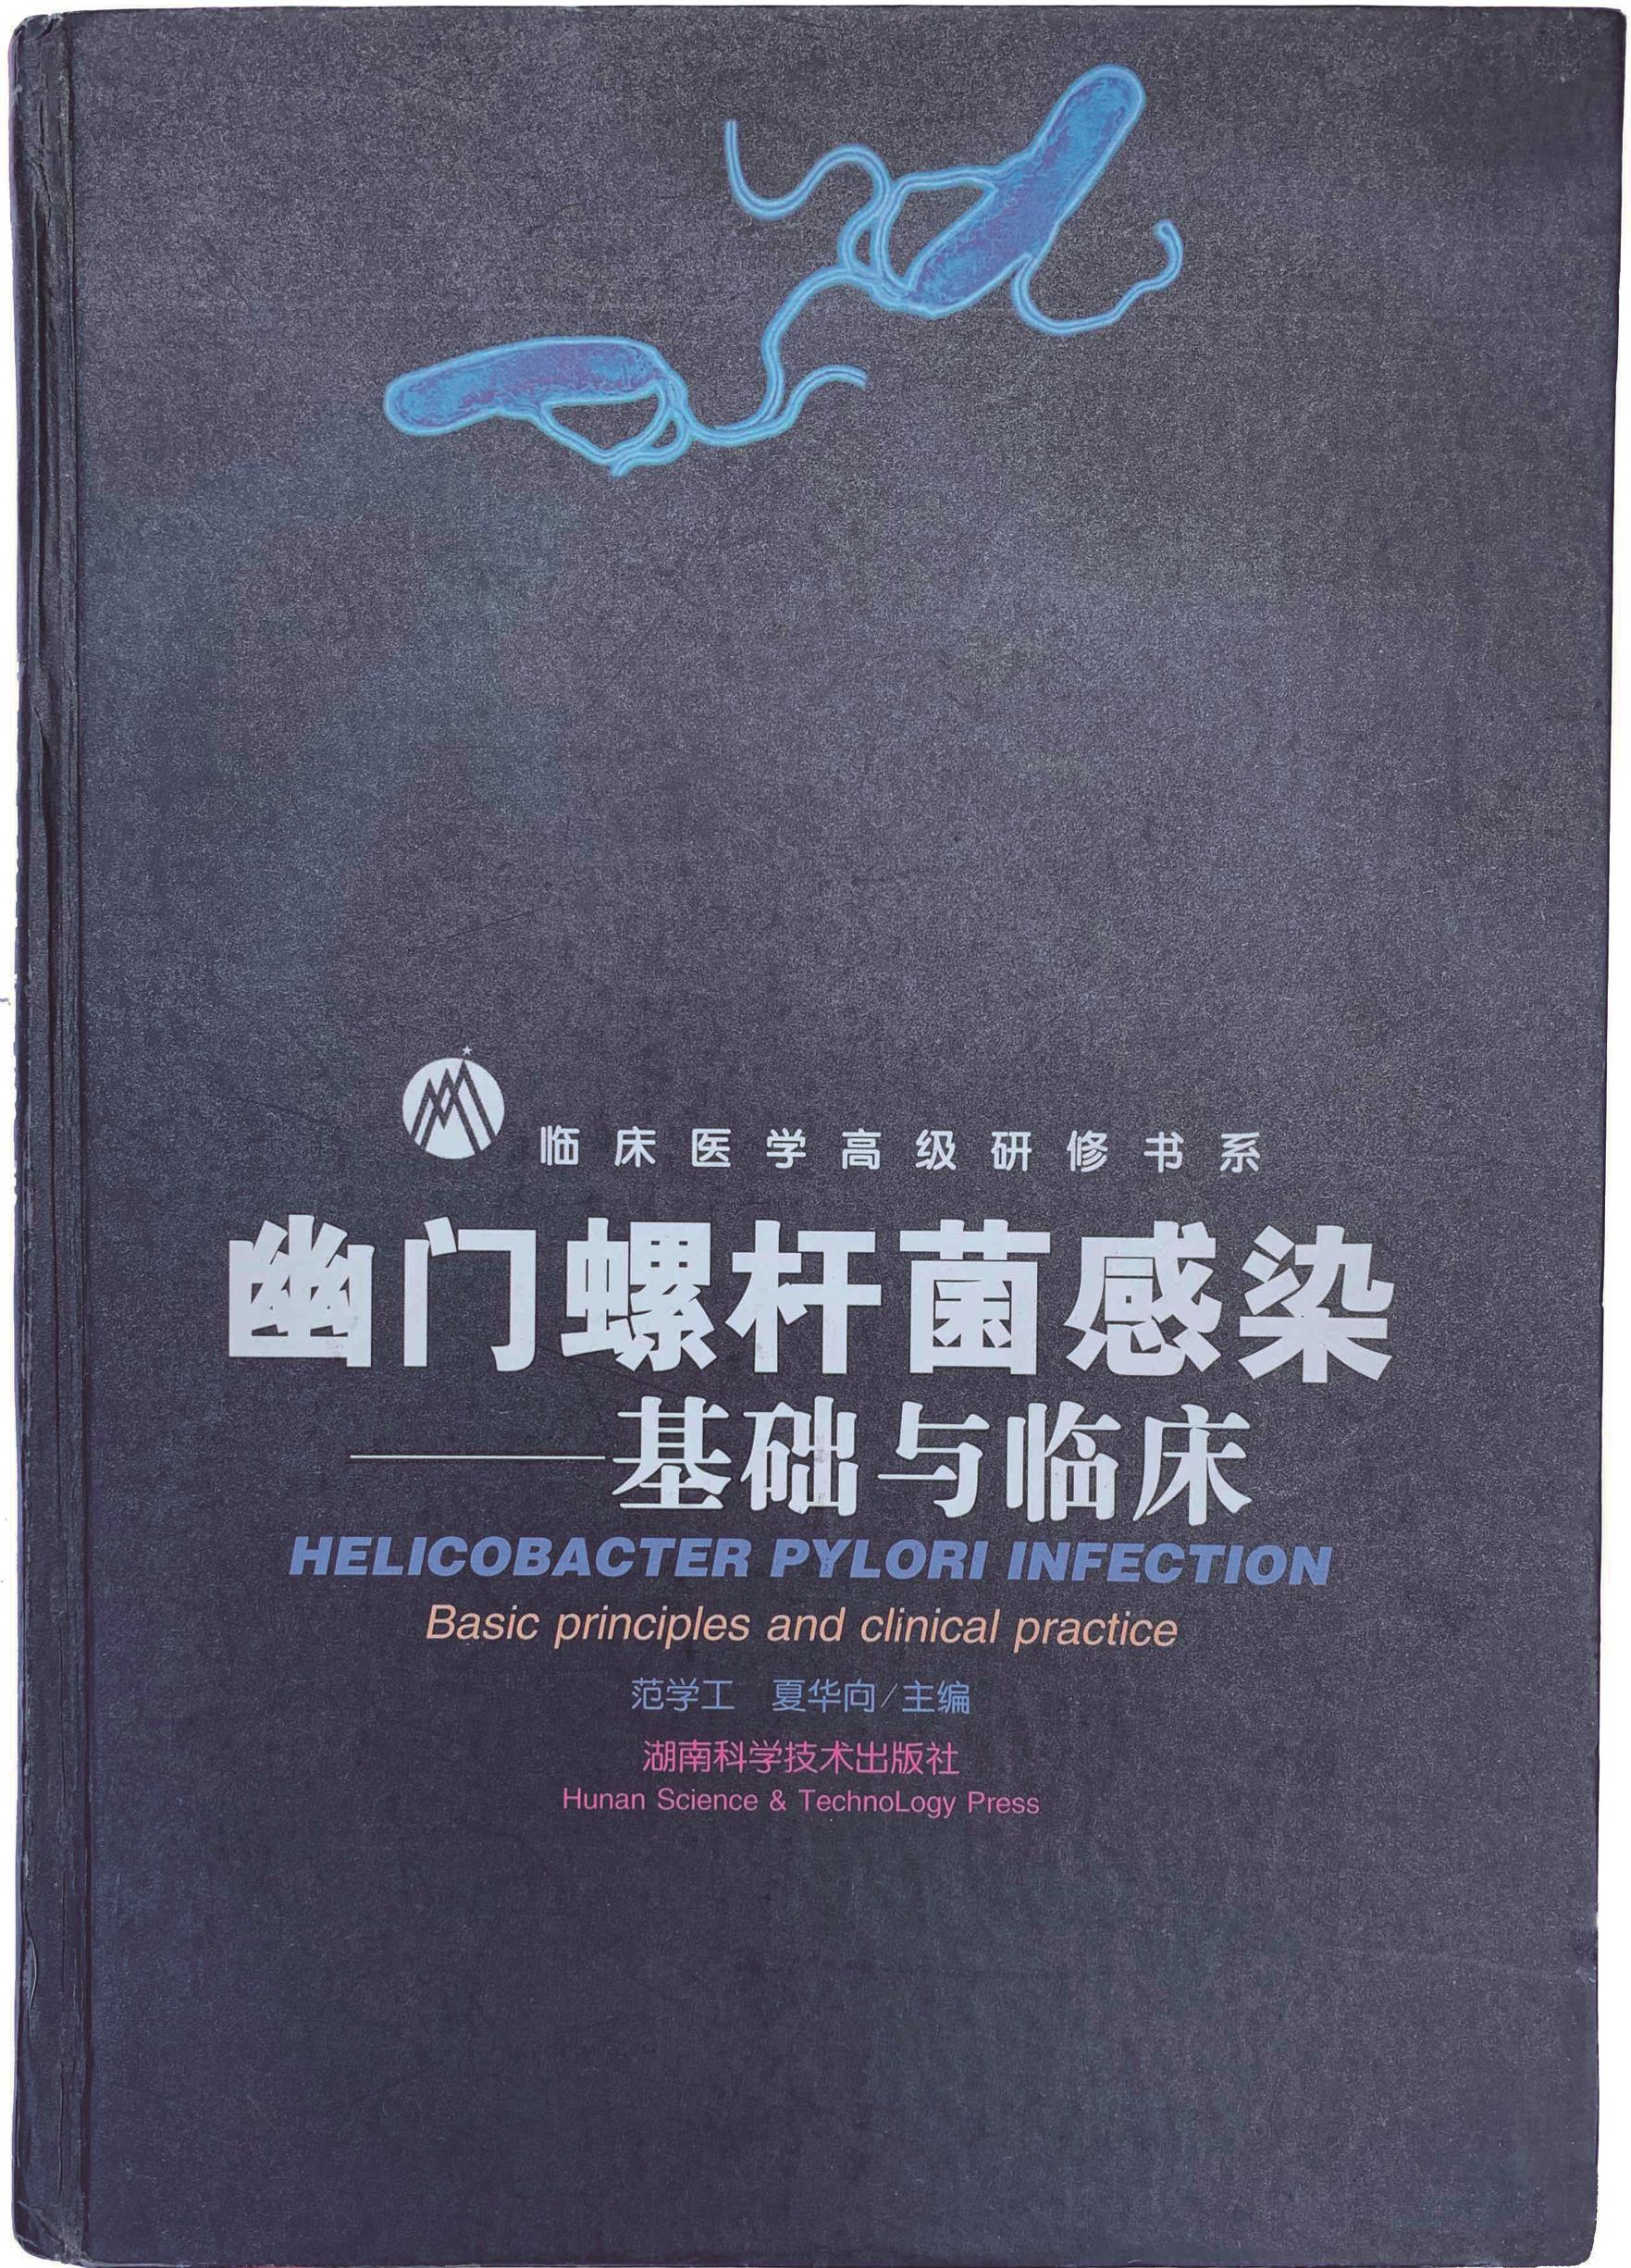 与范学工教授一起主编的专著《幽门螺杆菌感染-基础和临床》（湖南科学技术出版社，1997年）。